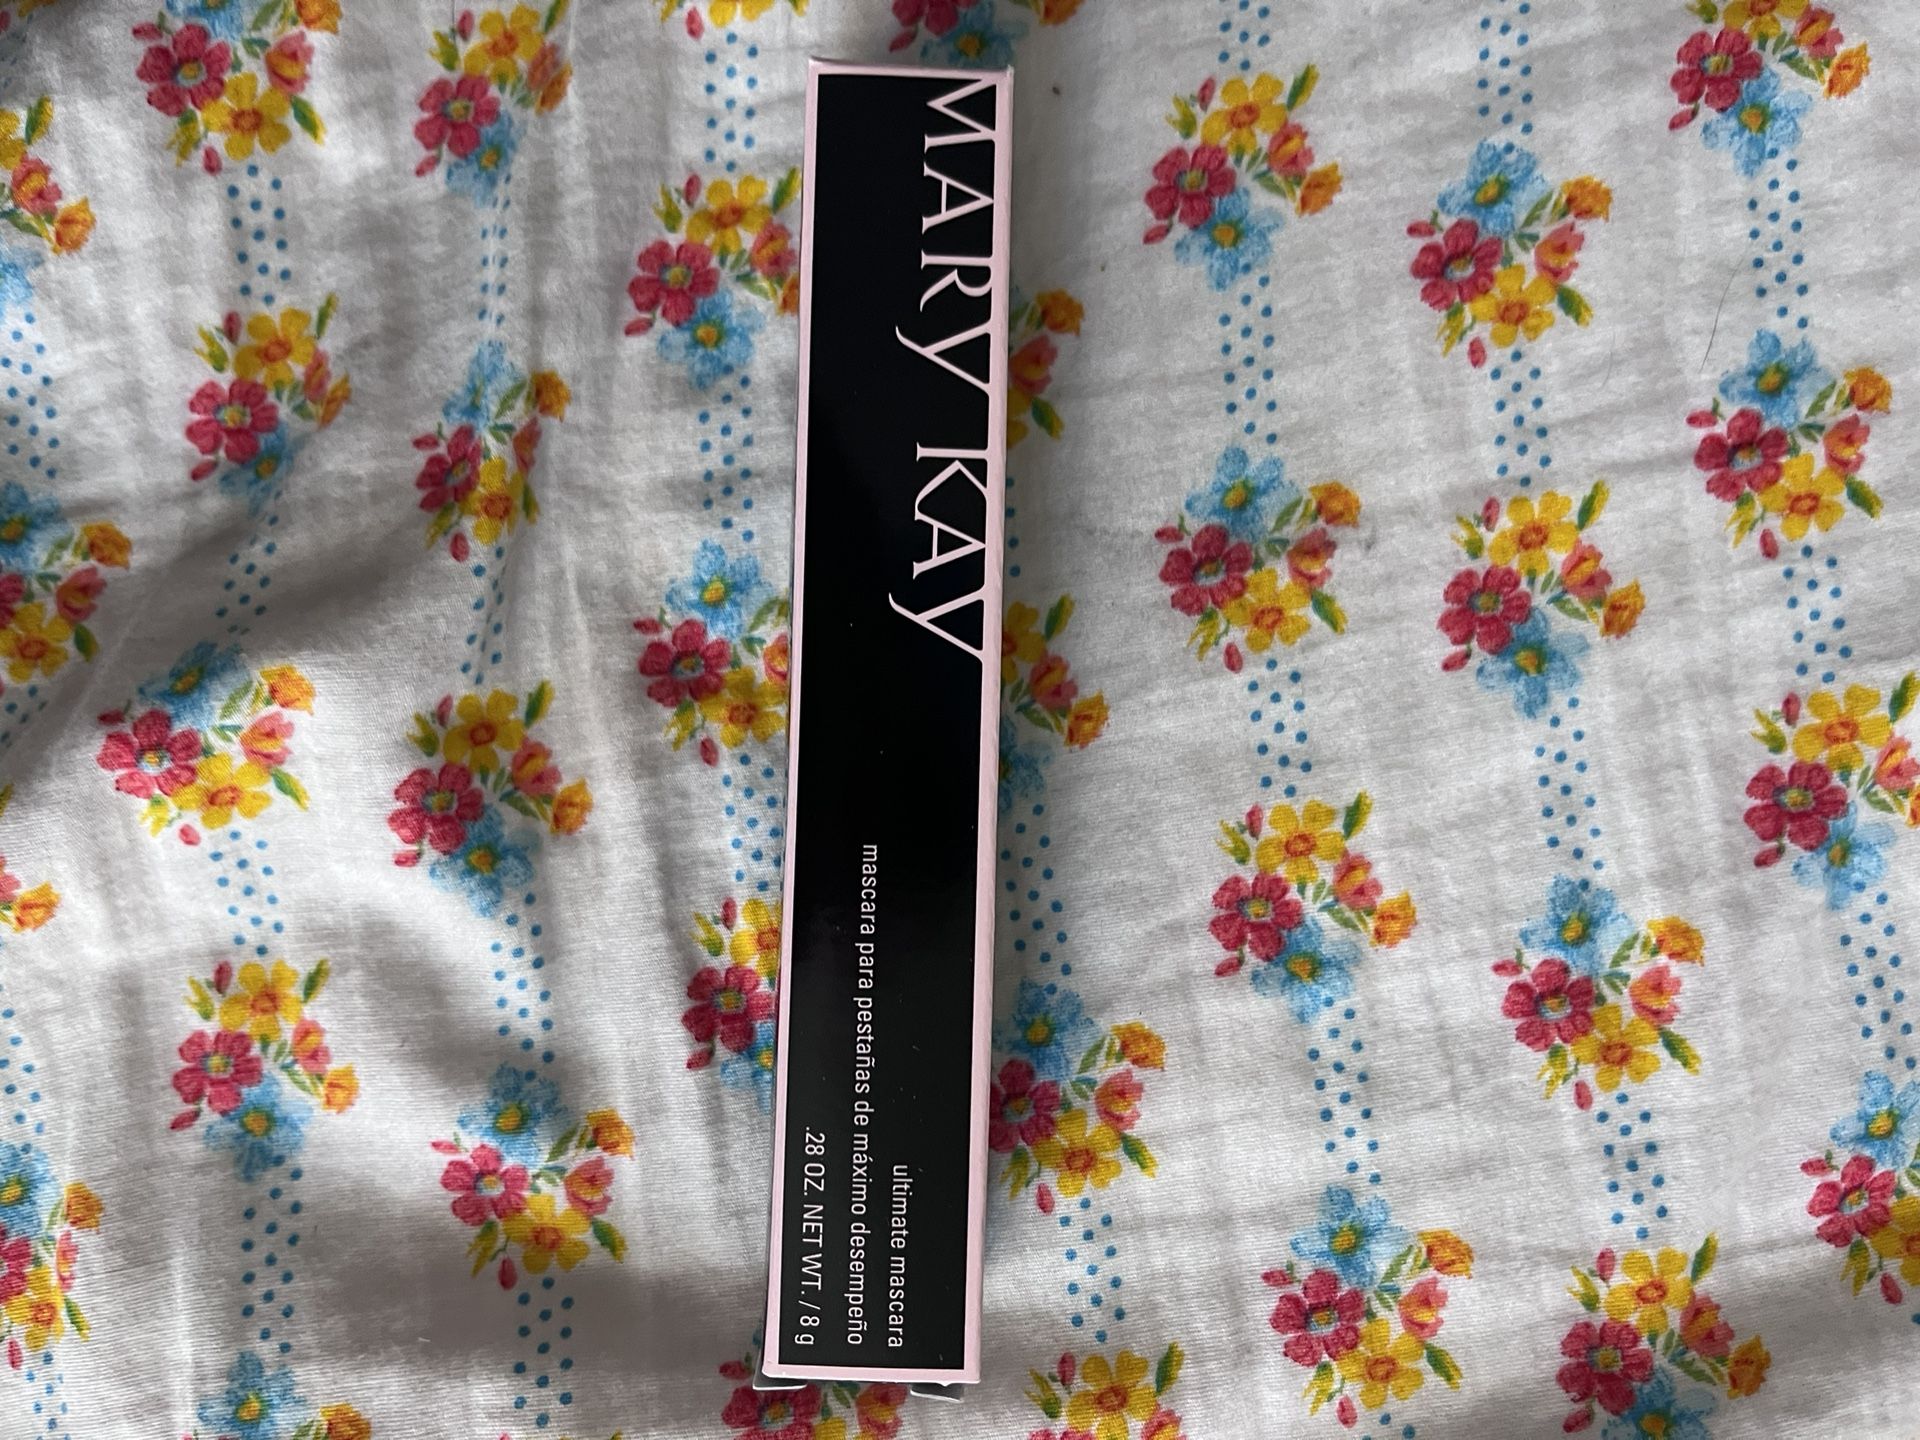 Mary Kay cosmetics